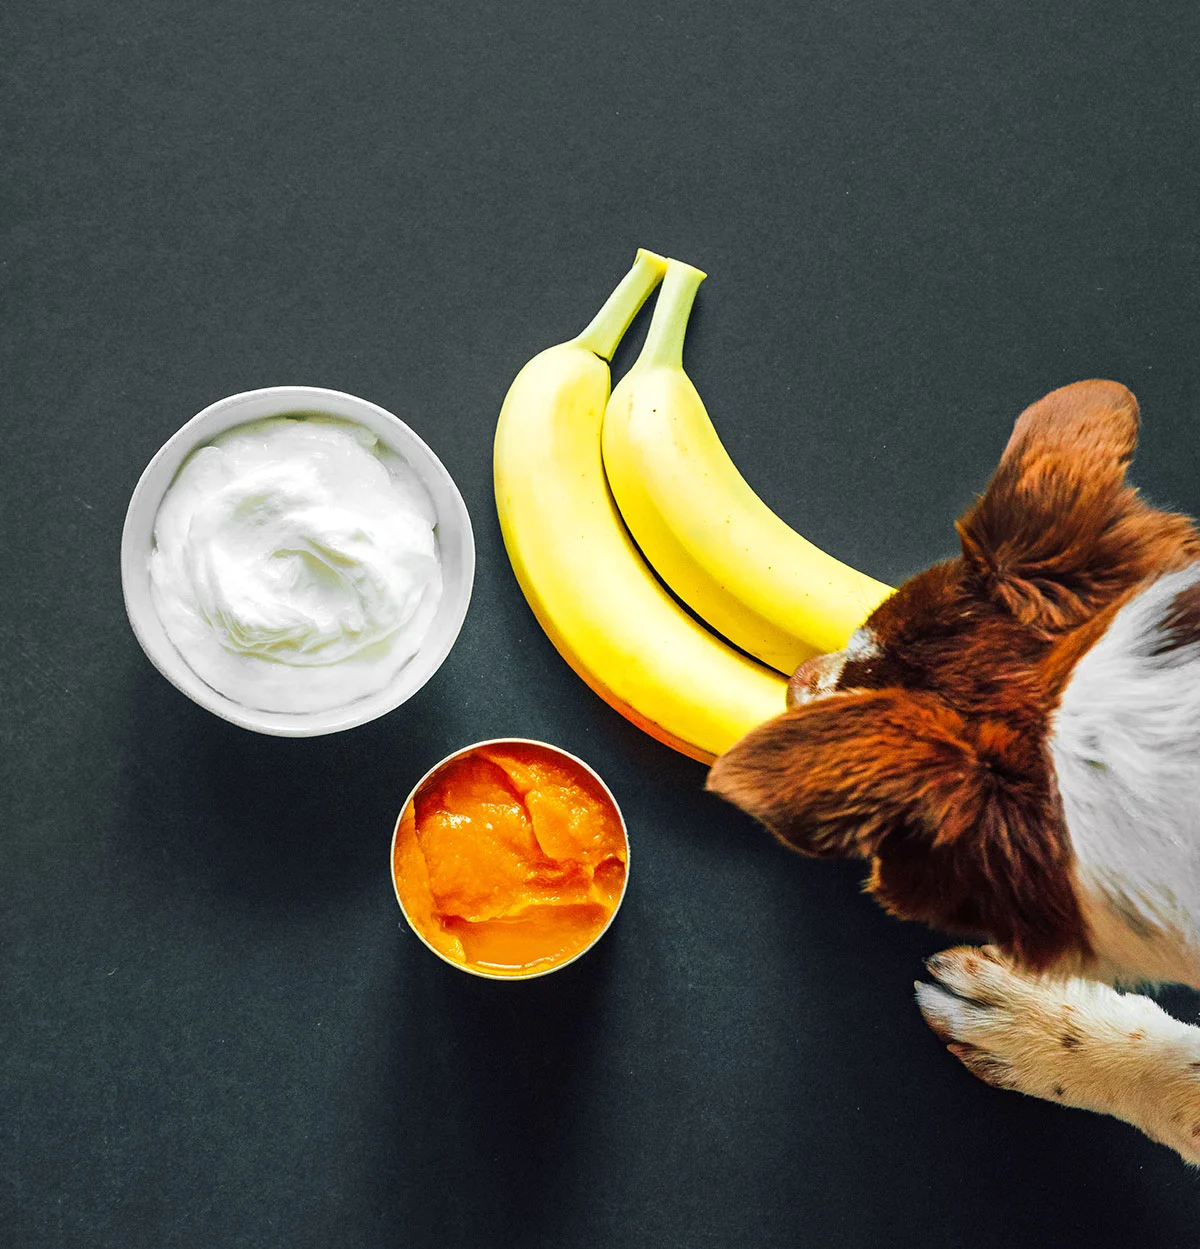 A brown dog sniffs a banana